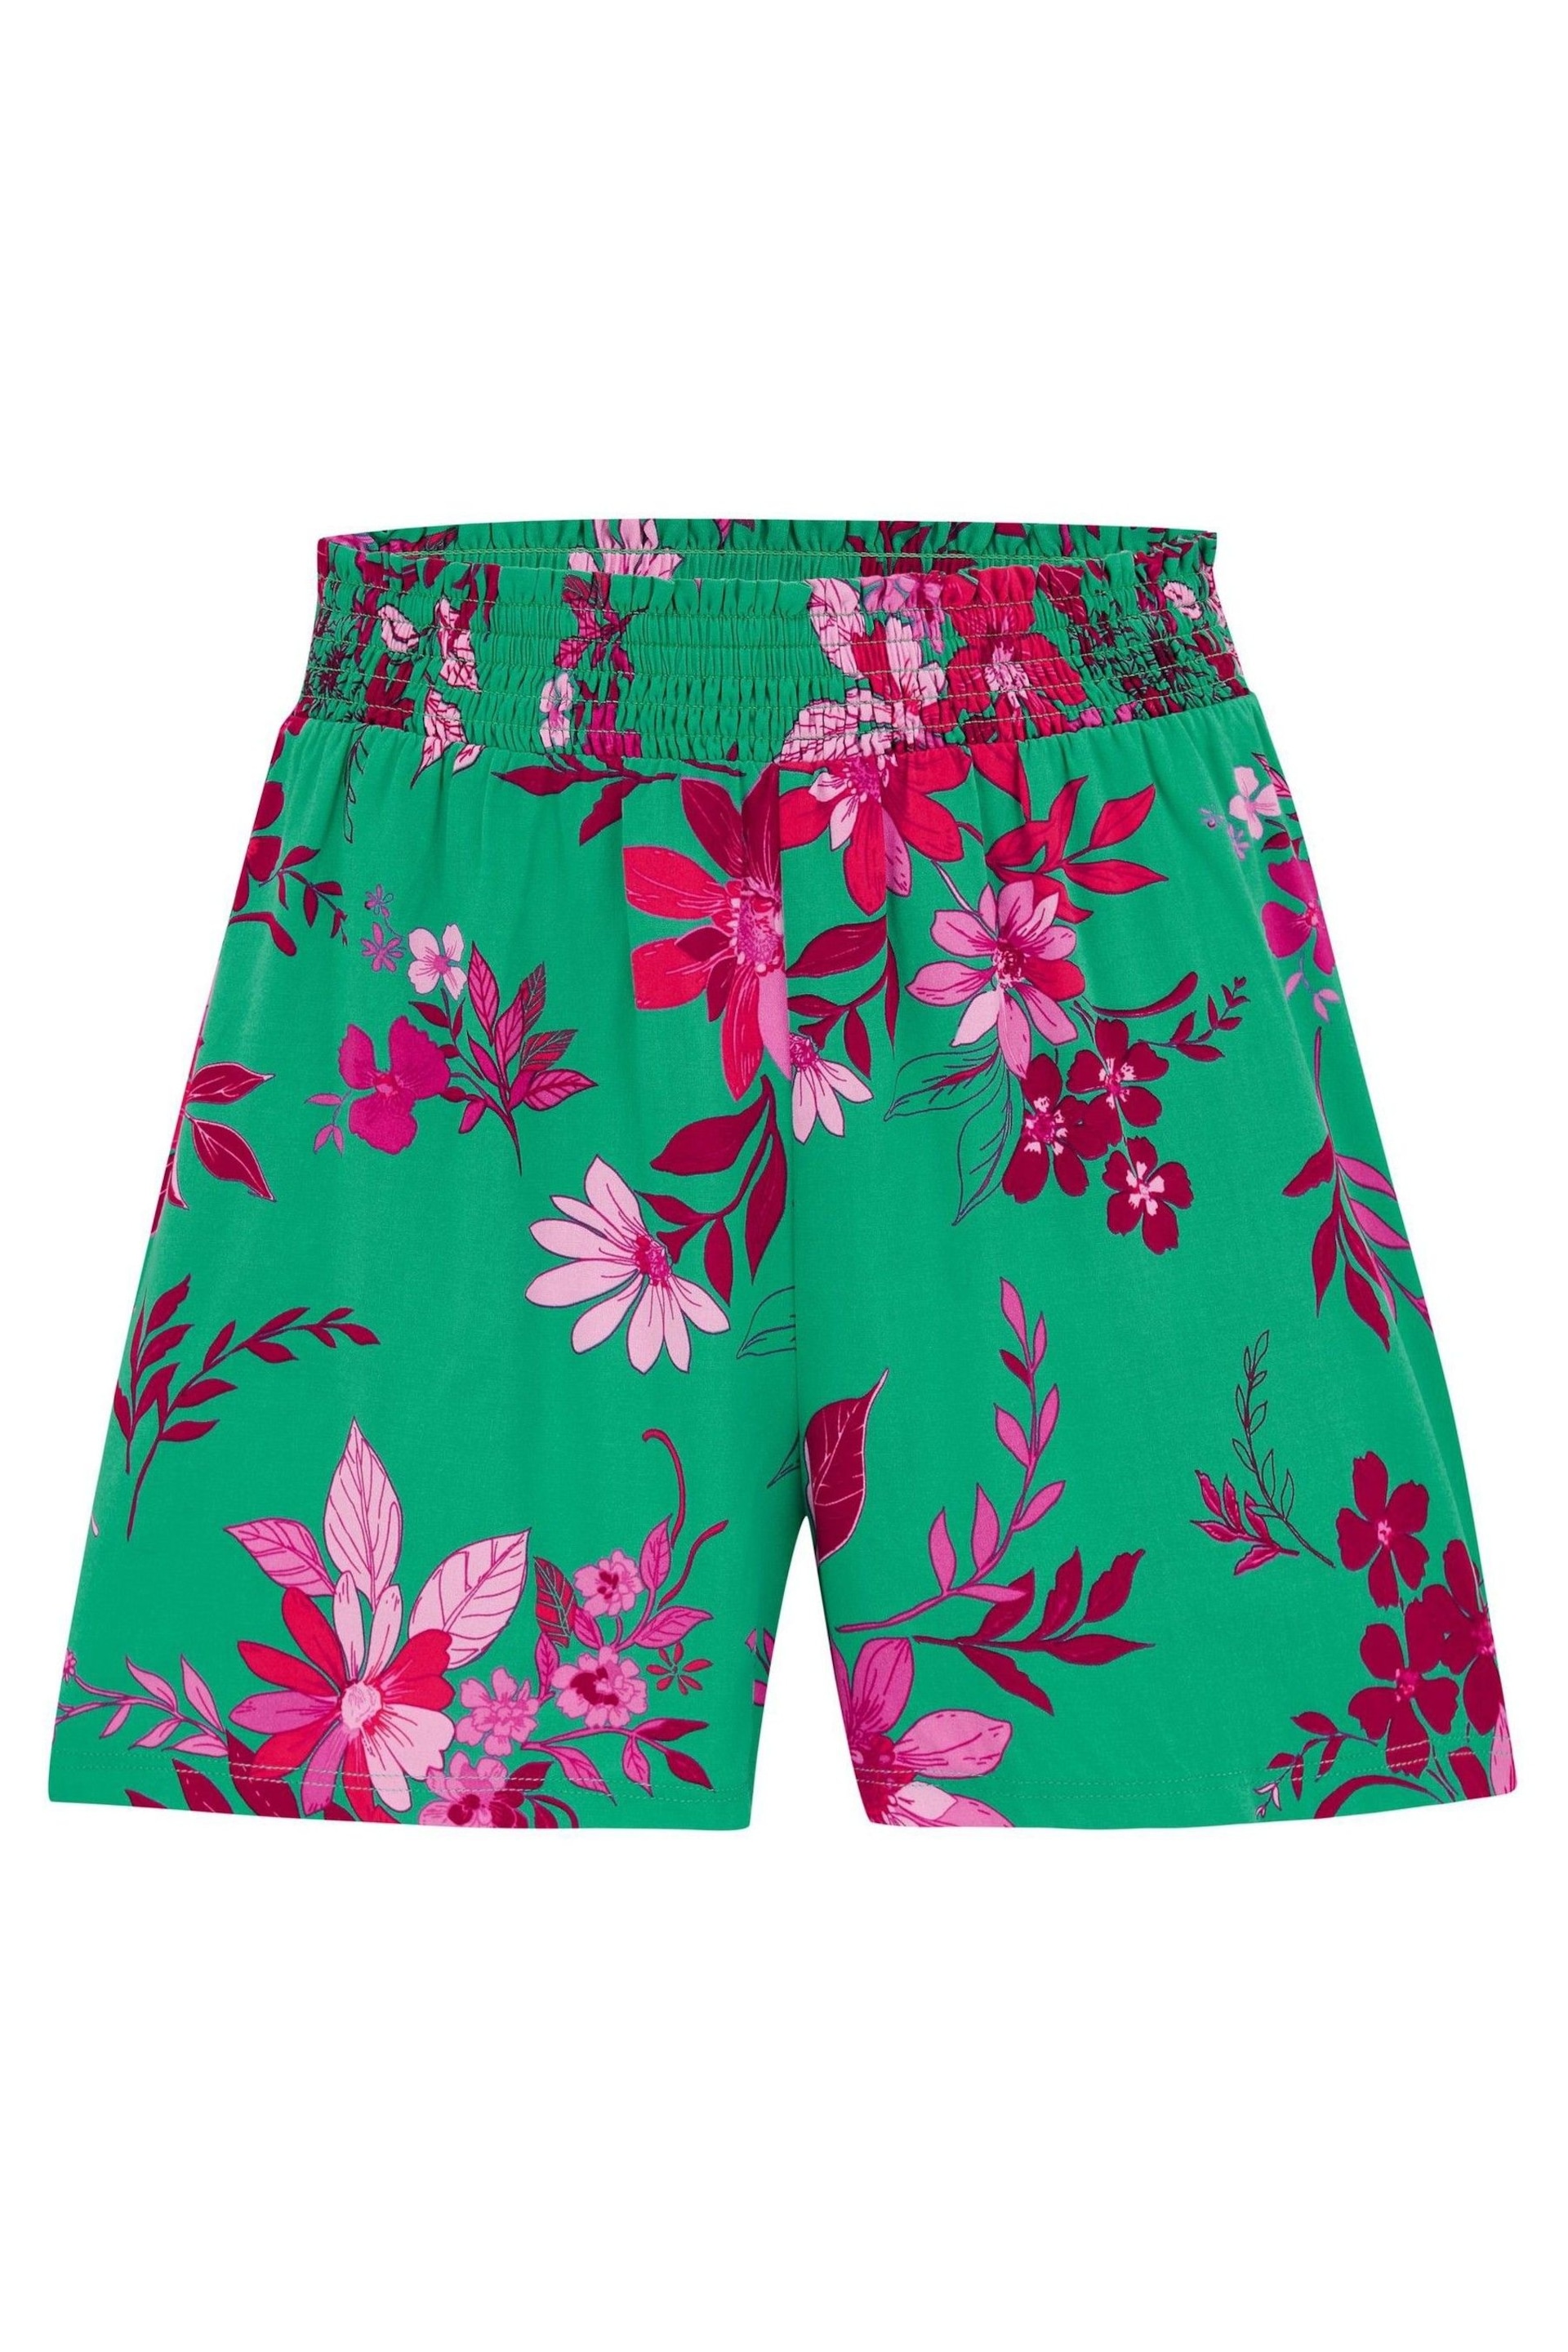 Pour Moi Green LENZING™ ECOVERO™ Viscose Beach Shorts - Image 3 of 4